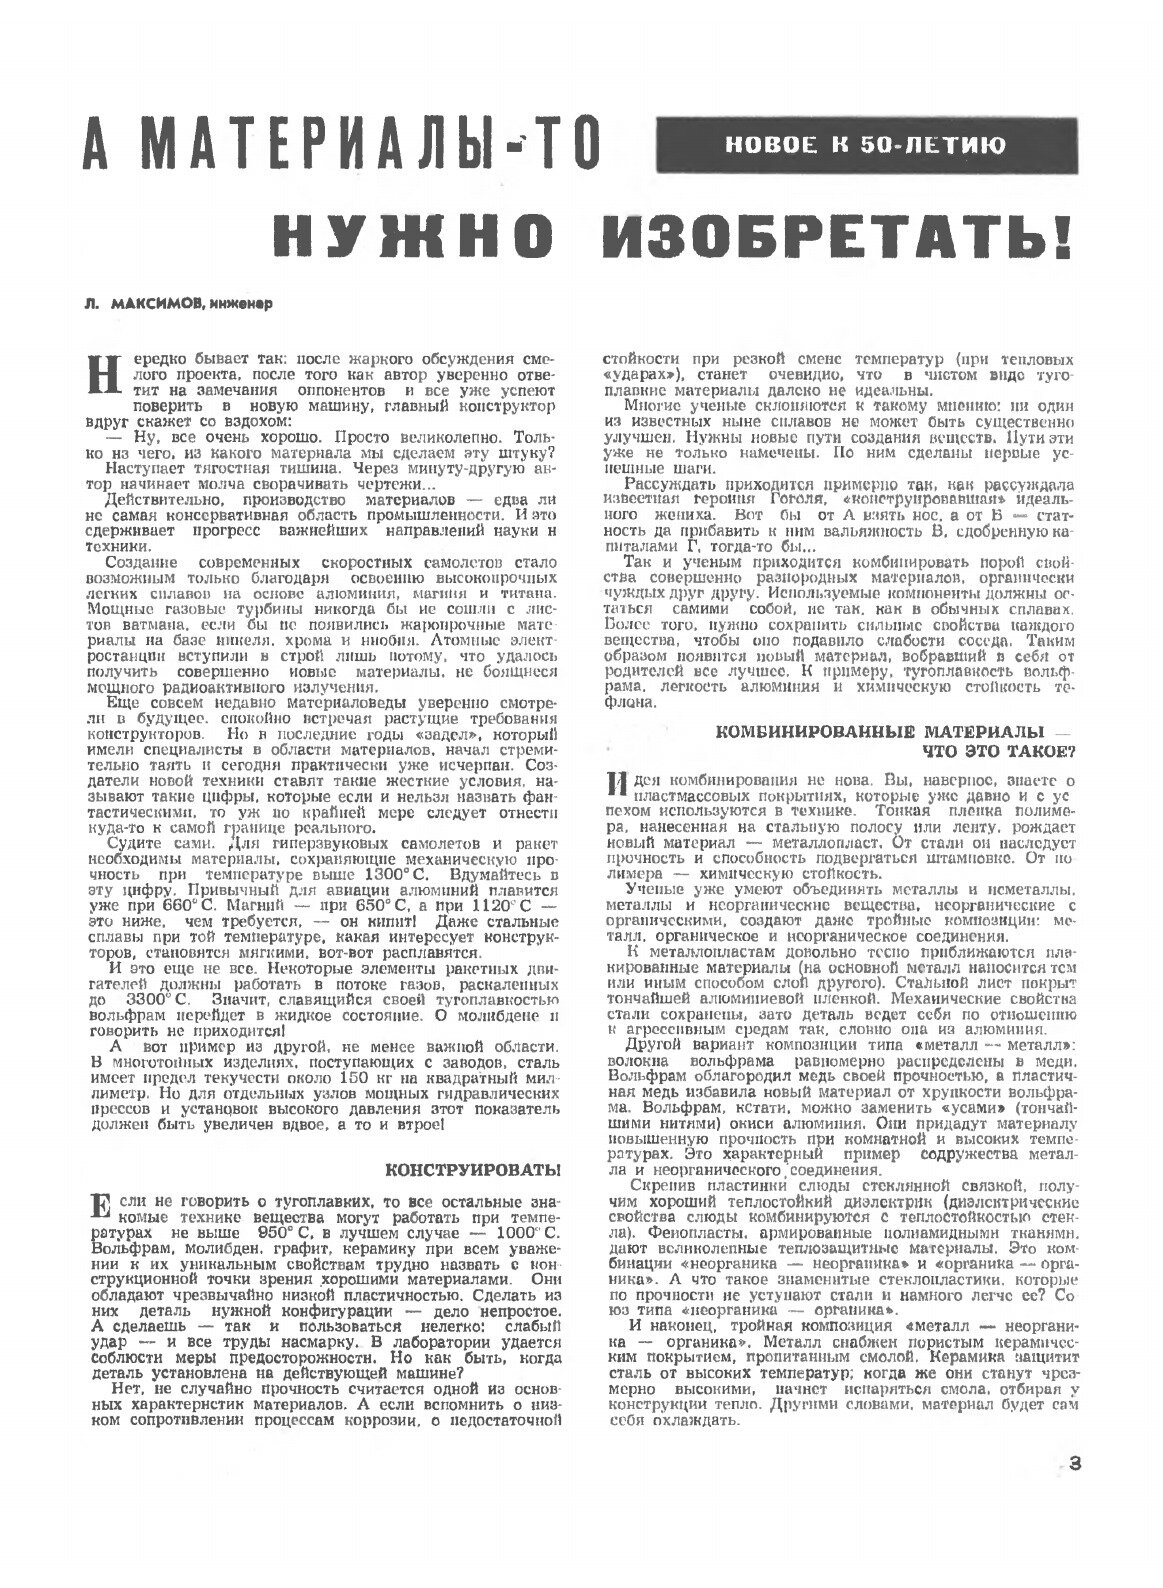 Журнал "Техника молодежи". № 05, 1967 - фото №3